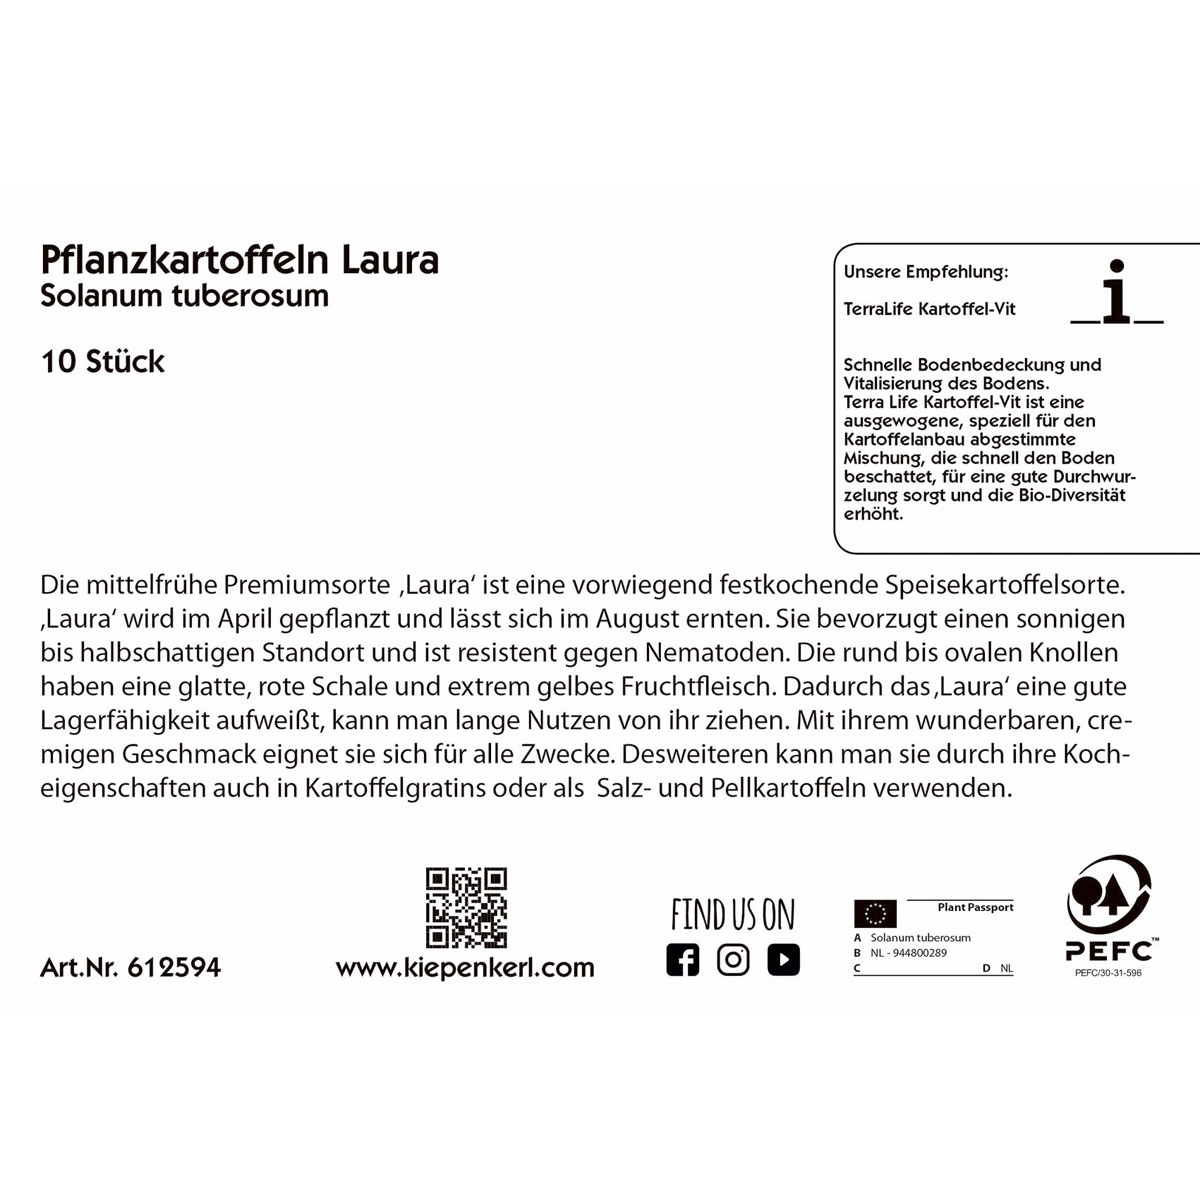 Pflanzkartoffel „Laura“ mittelfrüh, vorwiegend festkochend, 10 Stück